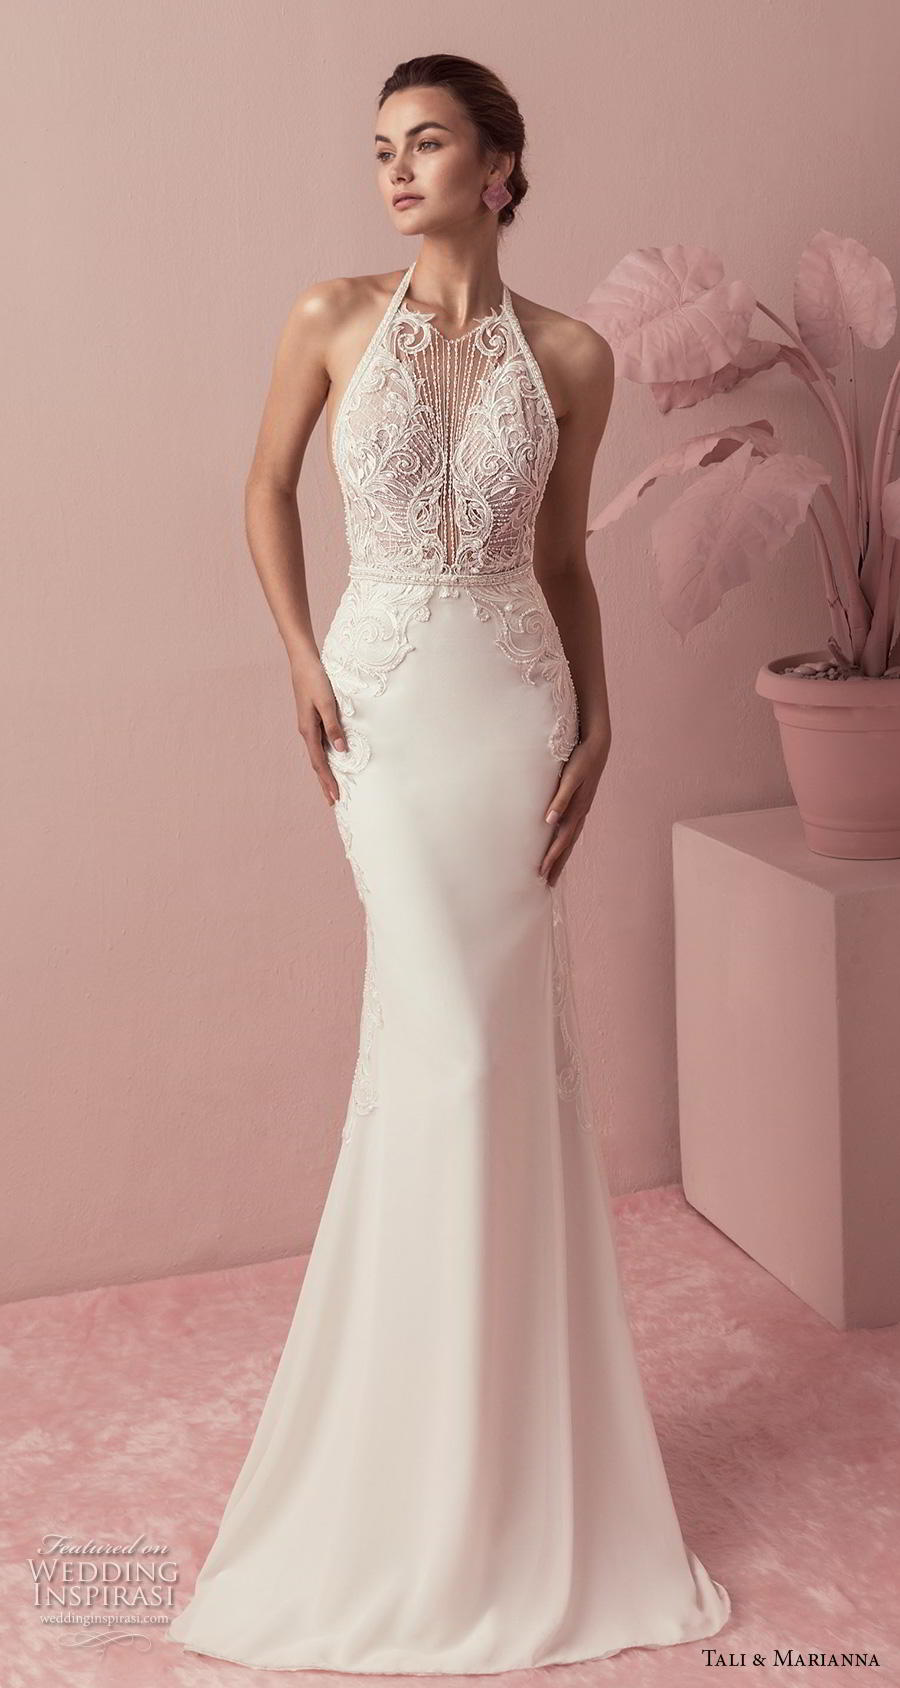 tali & marianna 2018 bridal sleeveless halter neck heavily embellished bodice elegant fit and flare wedding dress rasor back sweep train (8) mv